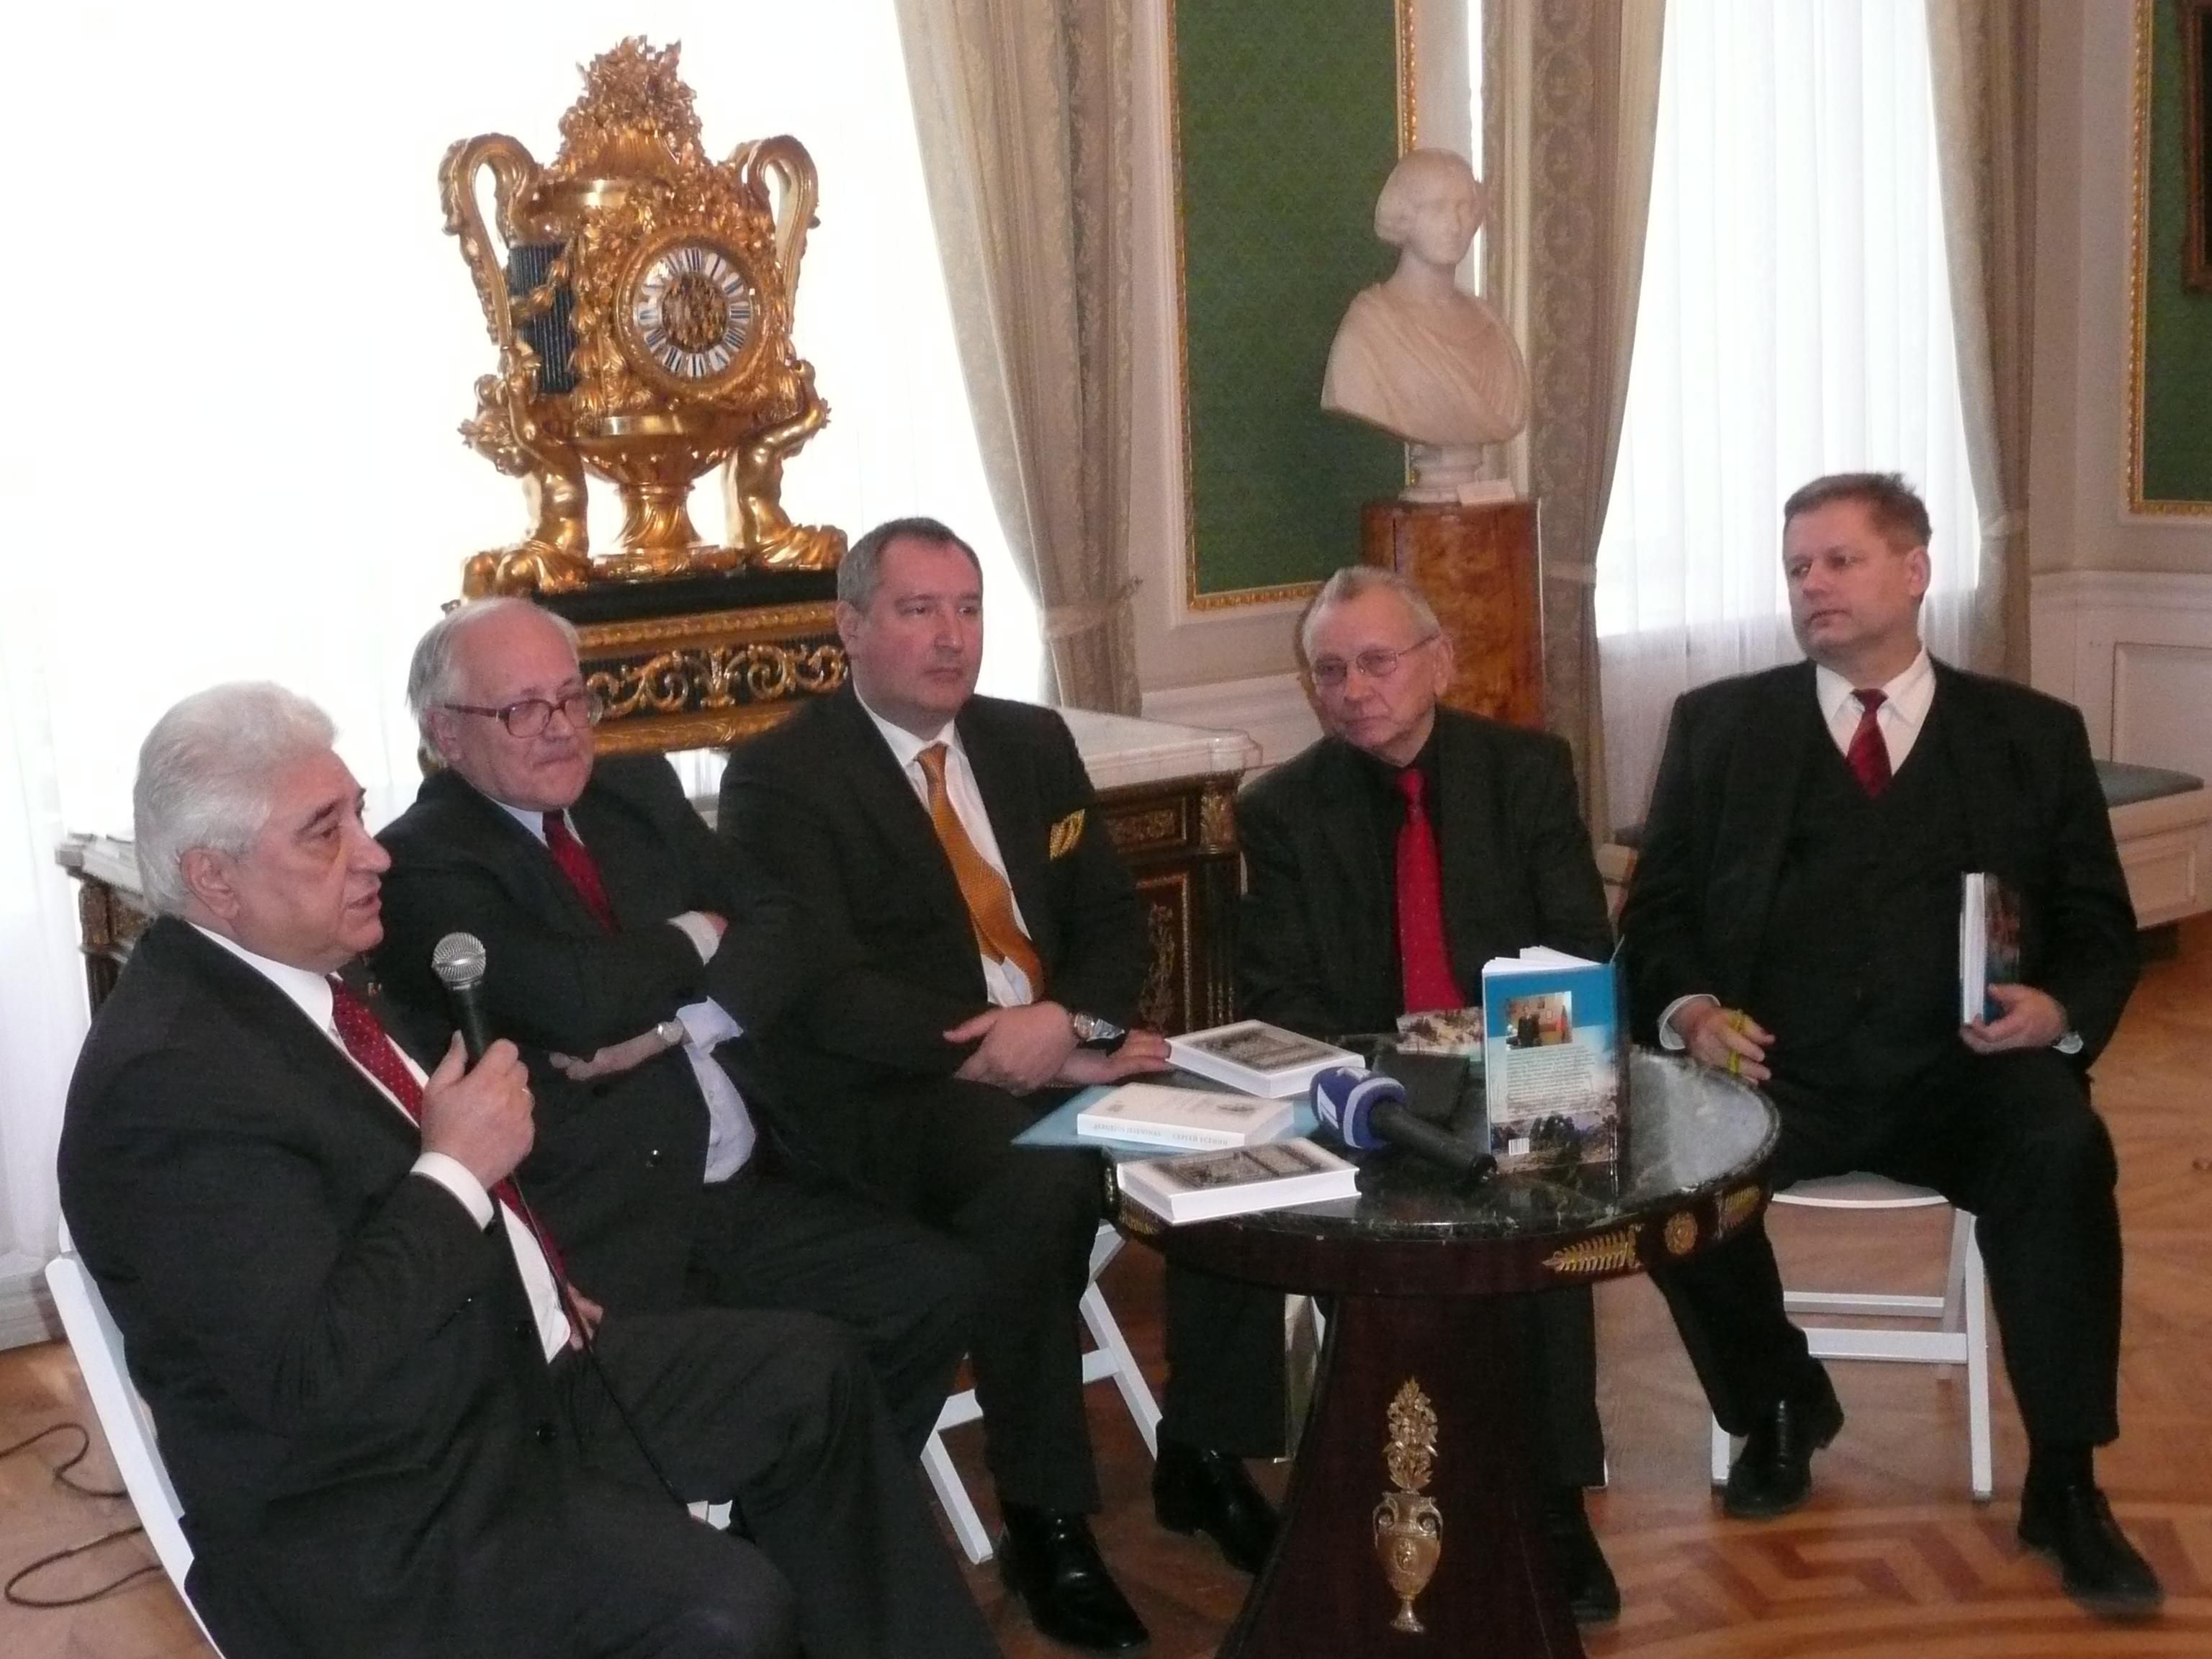 Д.Рогозин на презентации своей книги "Барон Жолток", изданной на литовском языке. Фото "Обзора".